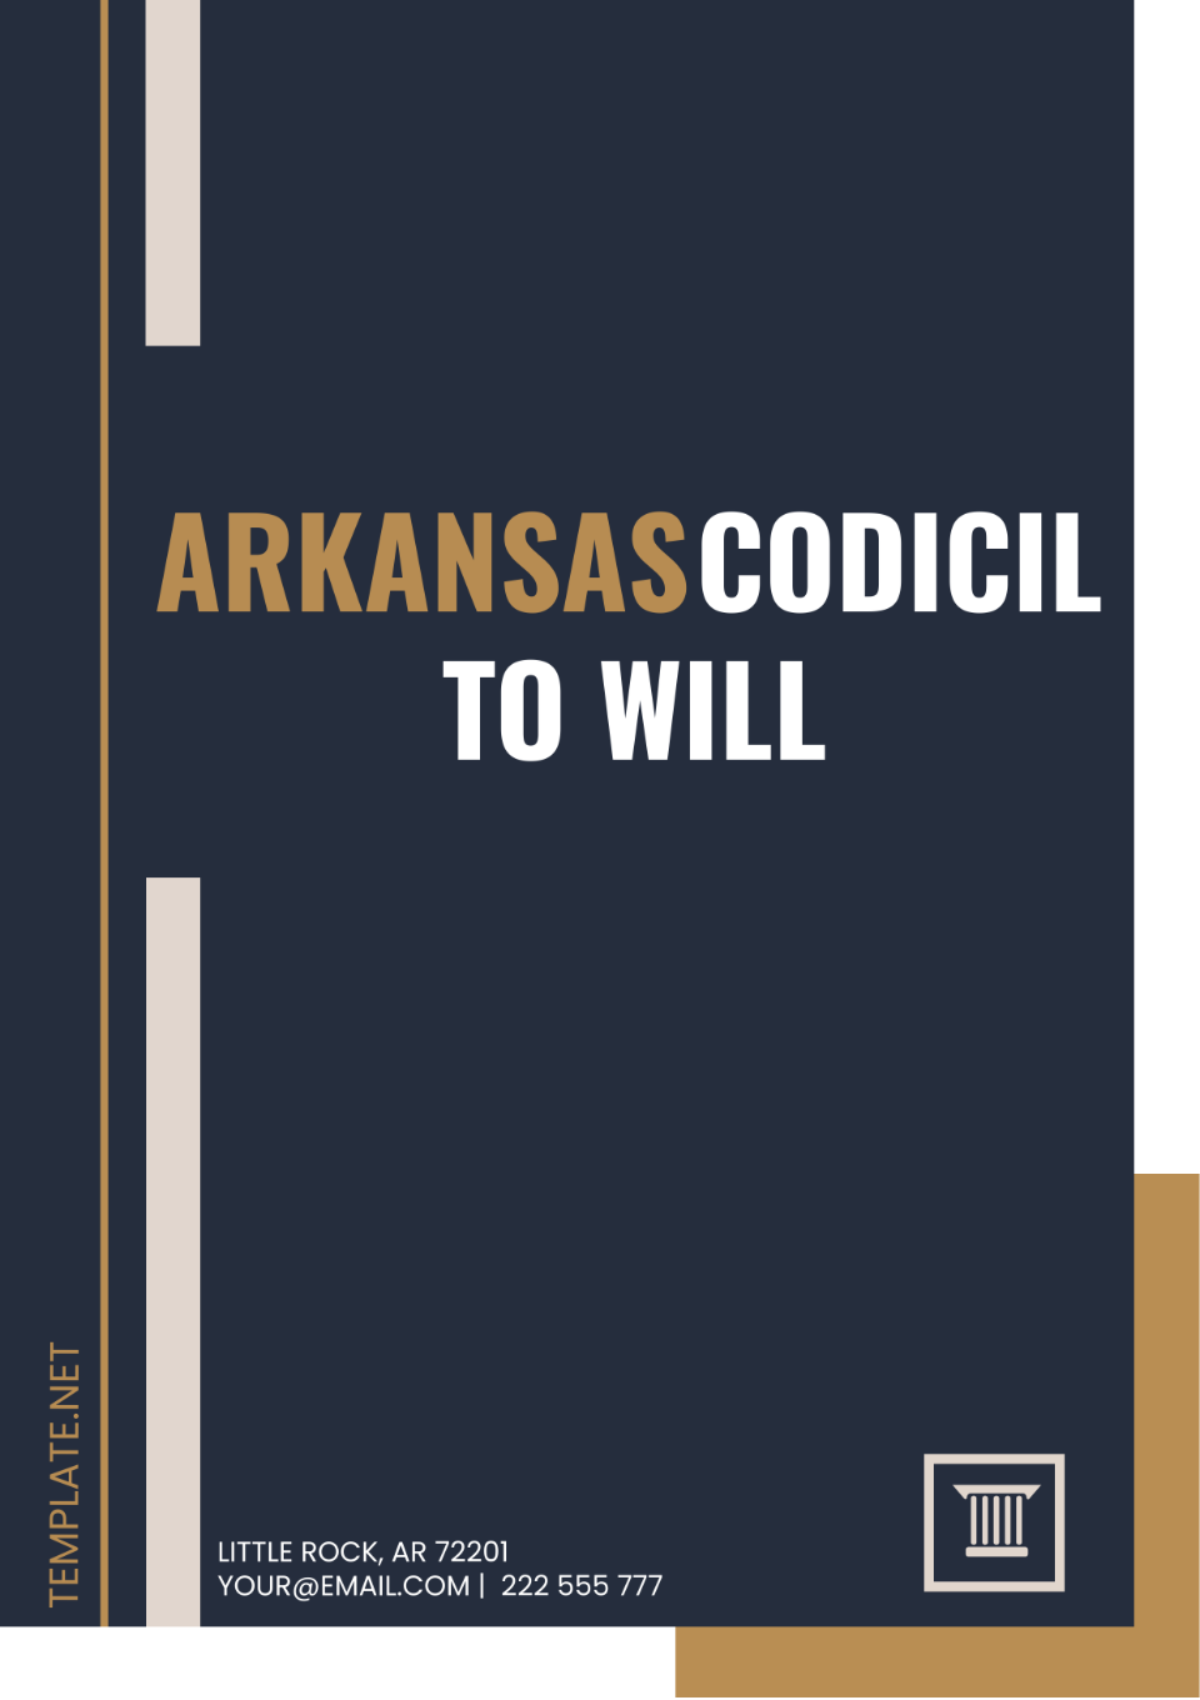 Arkansas Codicil to Will Template